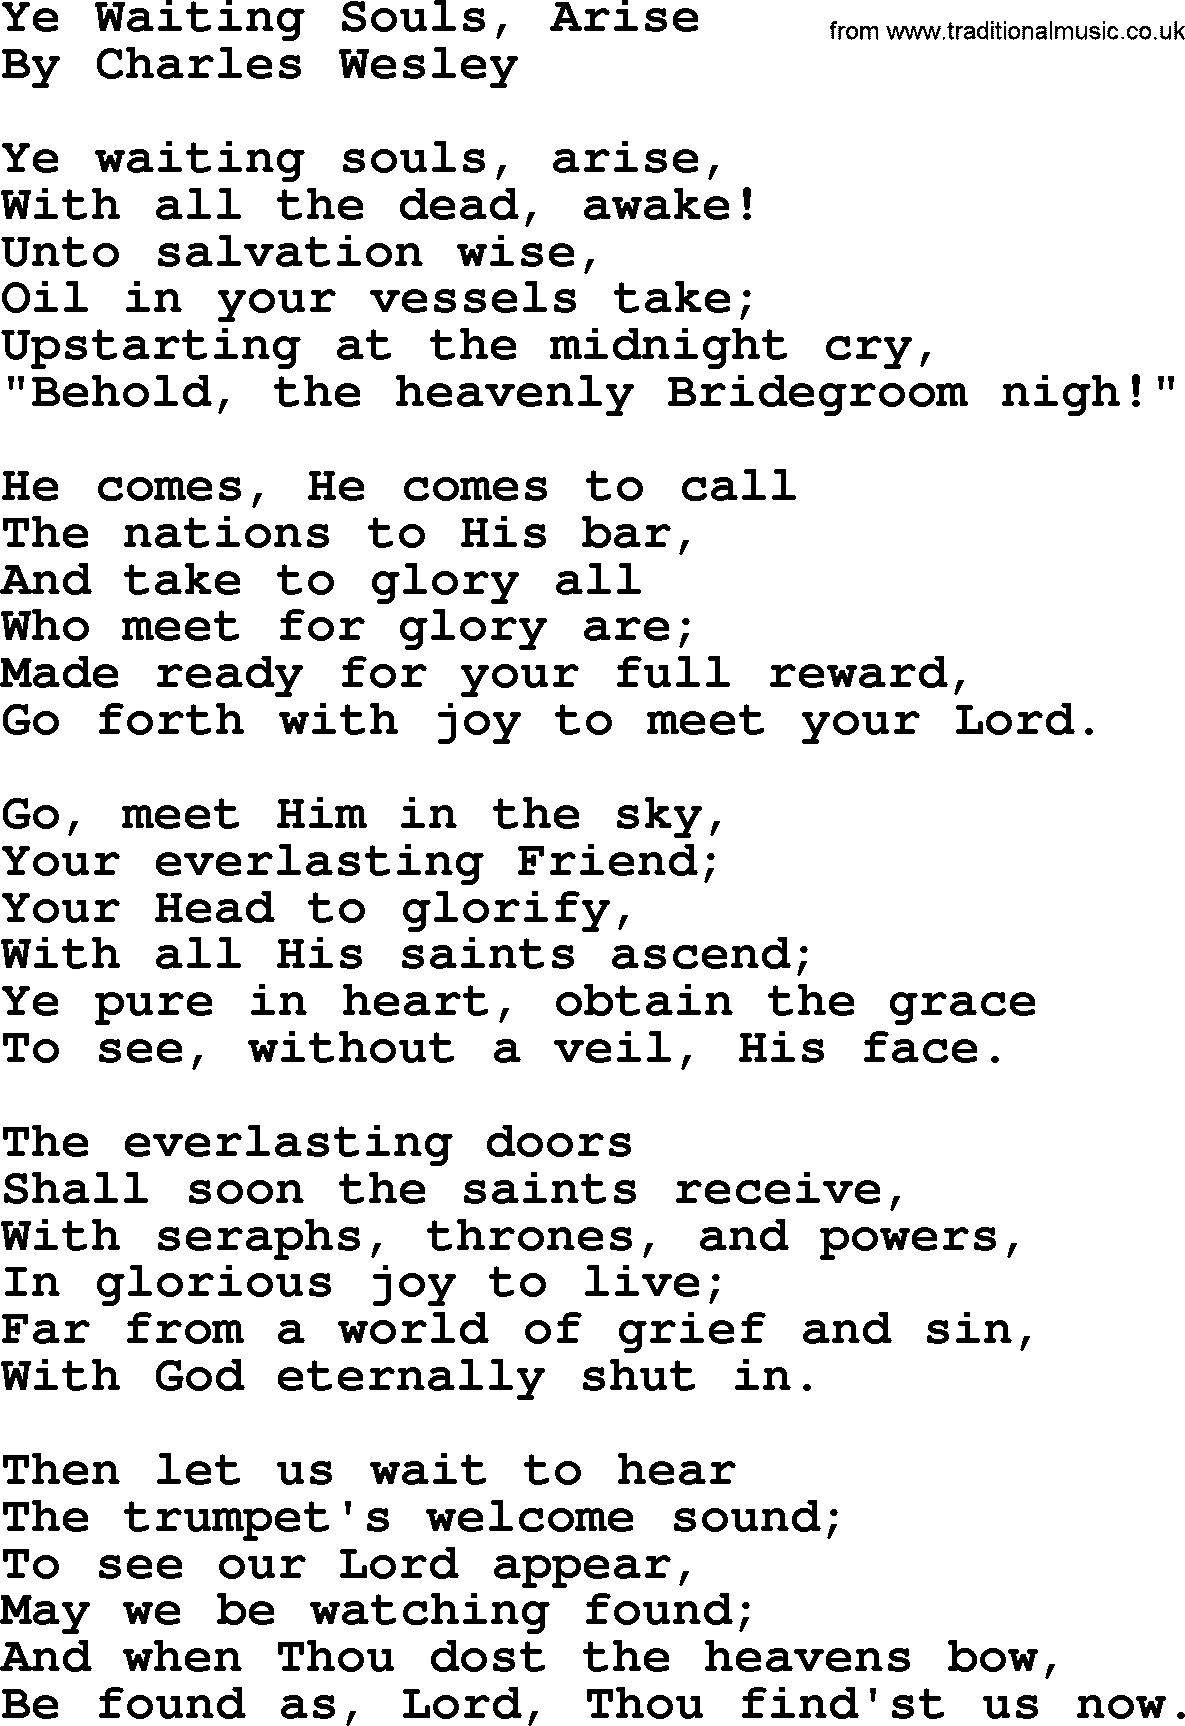 Charles Wesley hymn: Ye Waiting Souls, Arise, lyrics